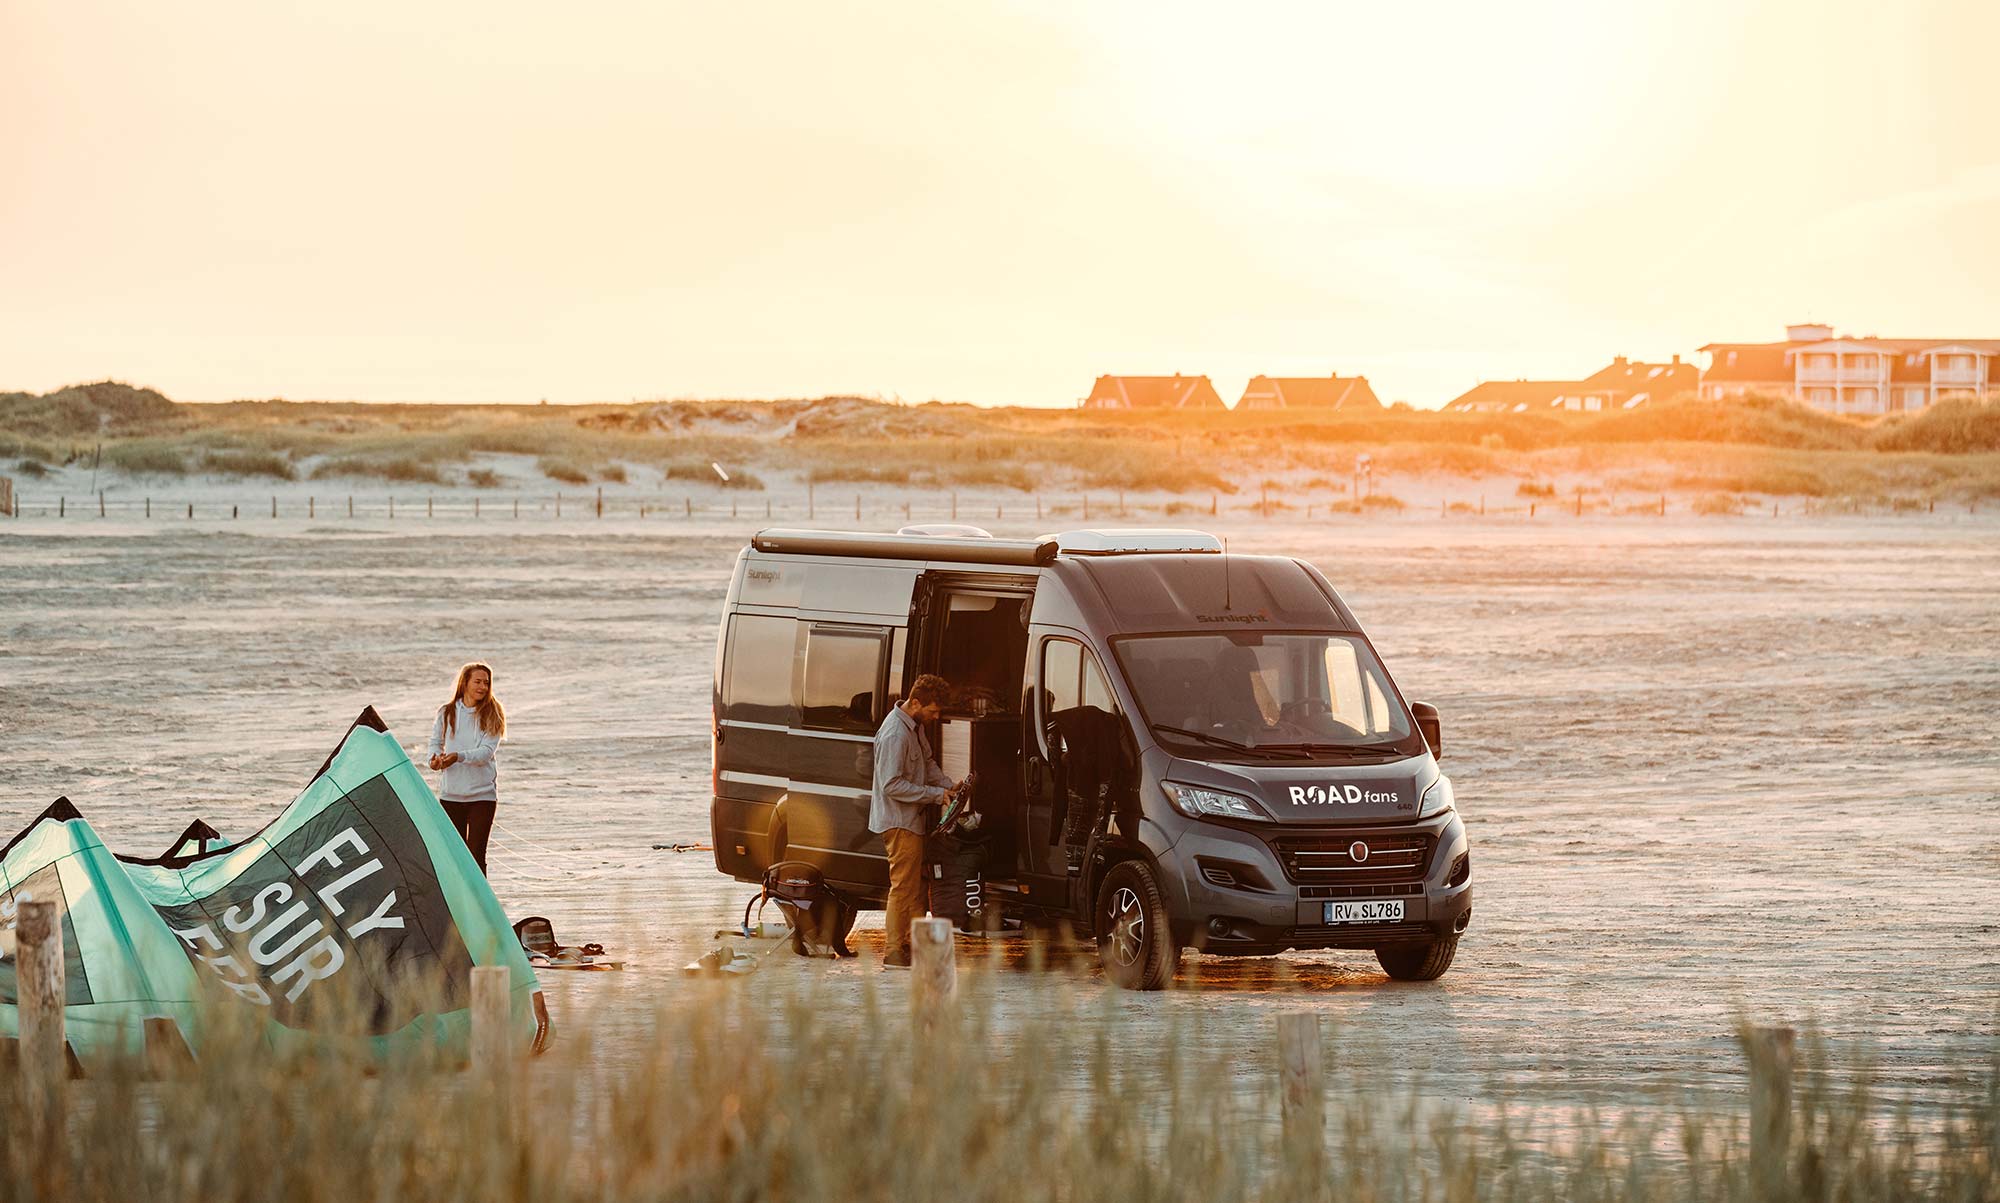 Kastenwagen Journey Plus von Roadfans steht am Strand im Sonnenuntergang mit einem jungen Paar.